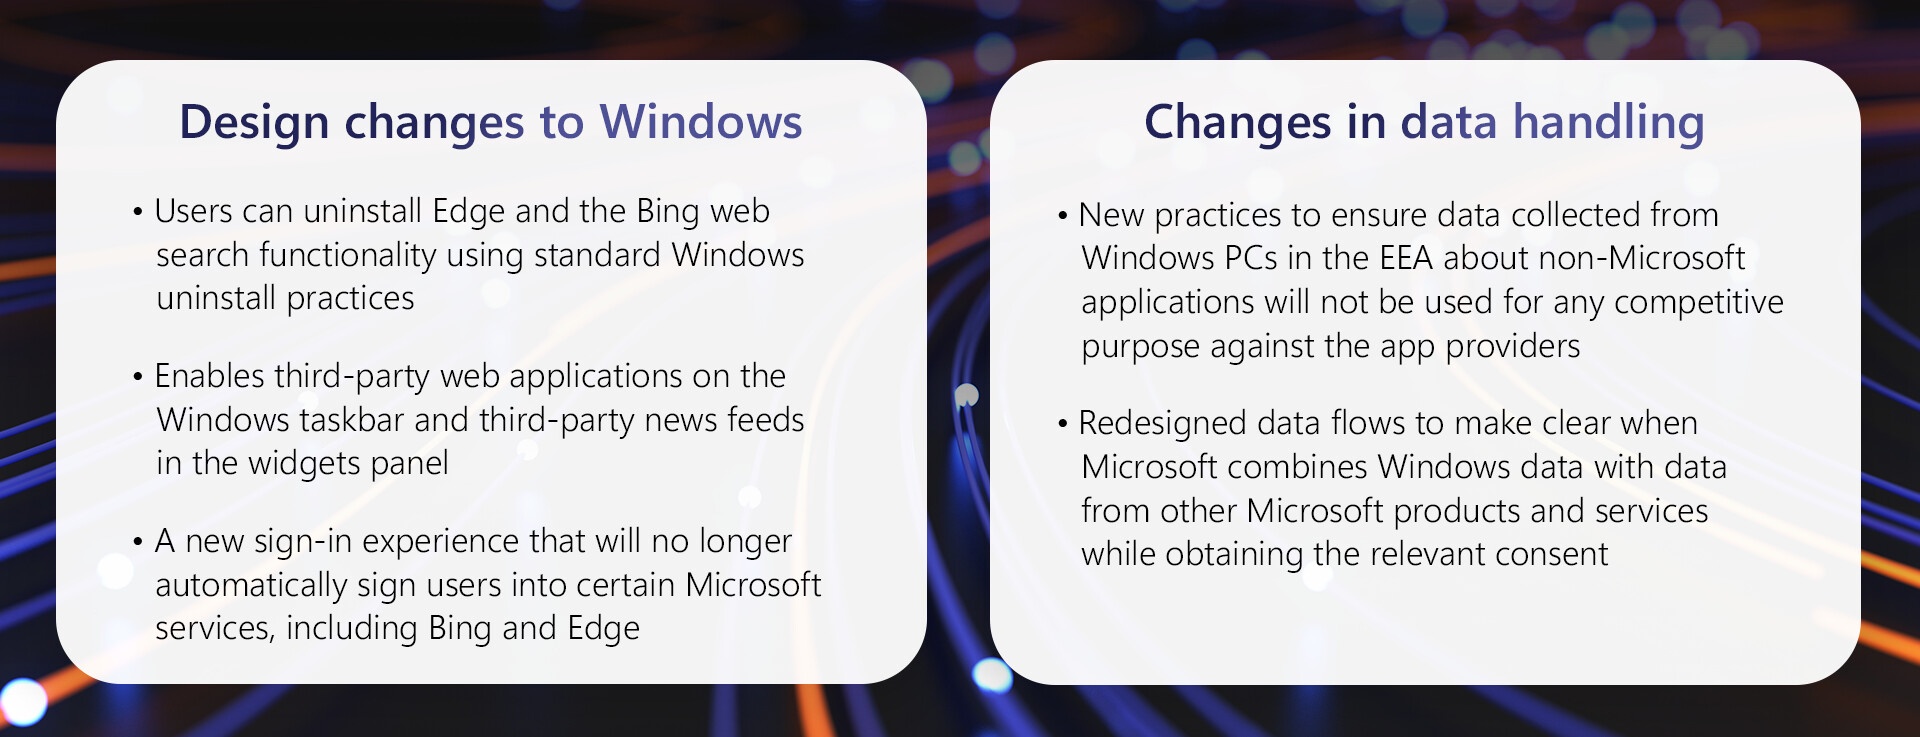 Änderungen, die Microsoft an Windows zur DMA-Konformität vorgenommen hat